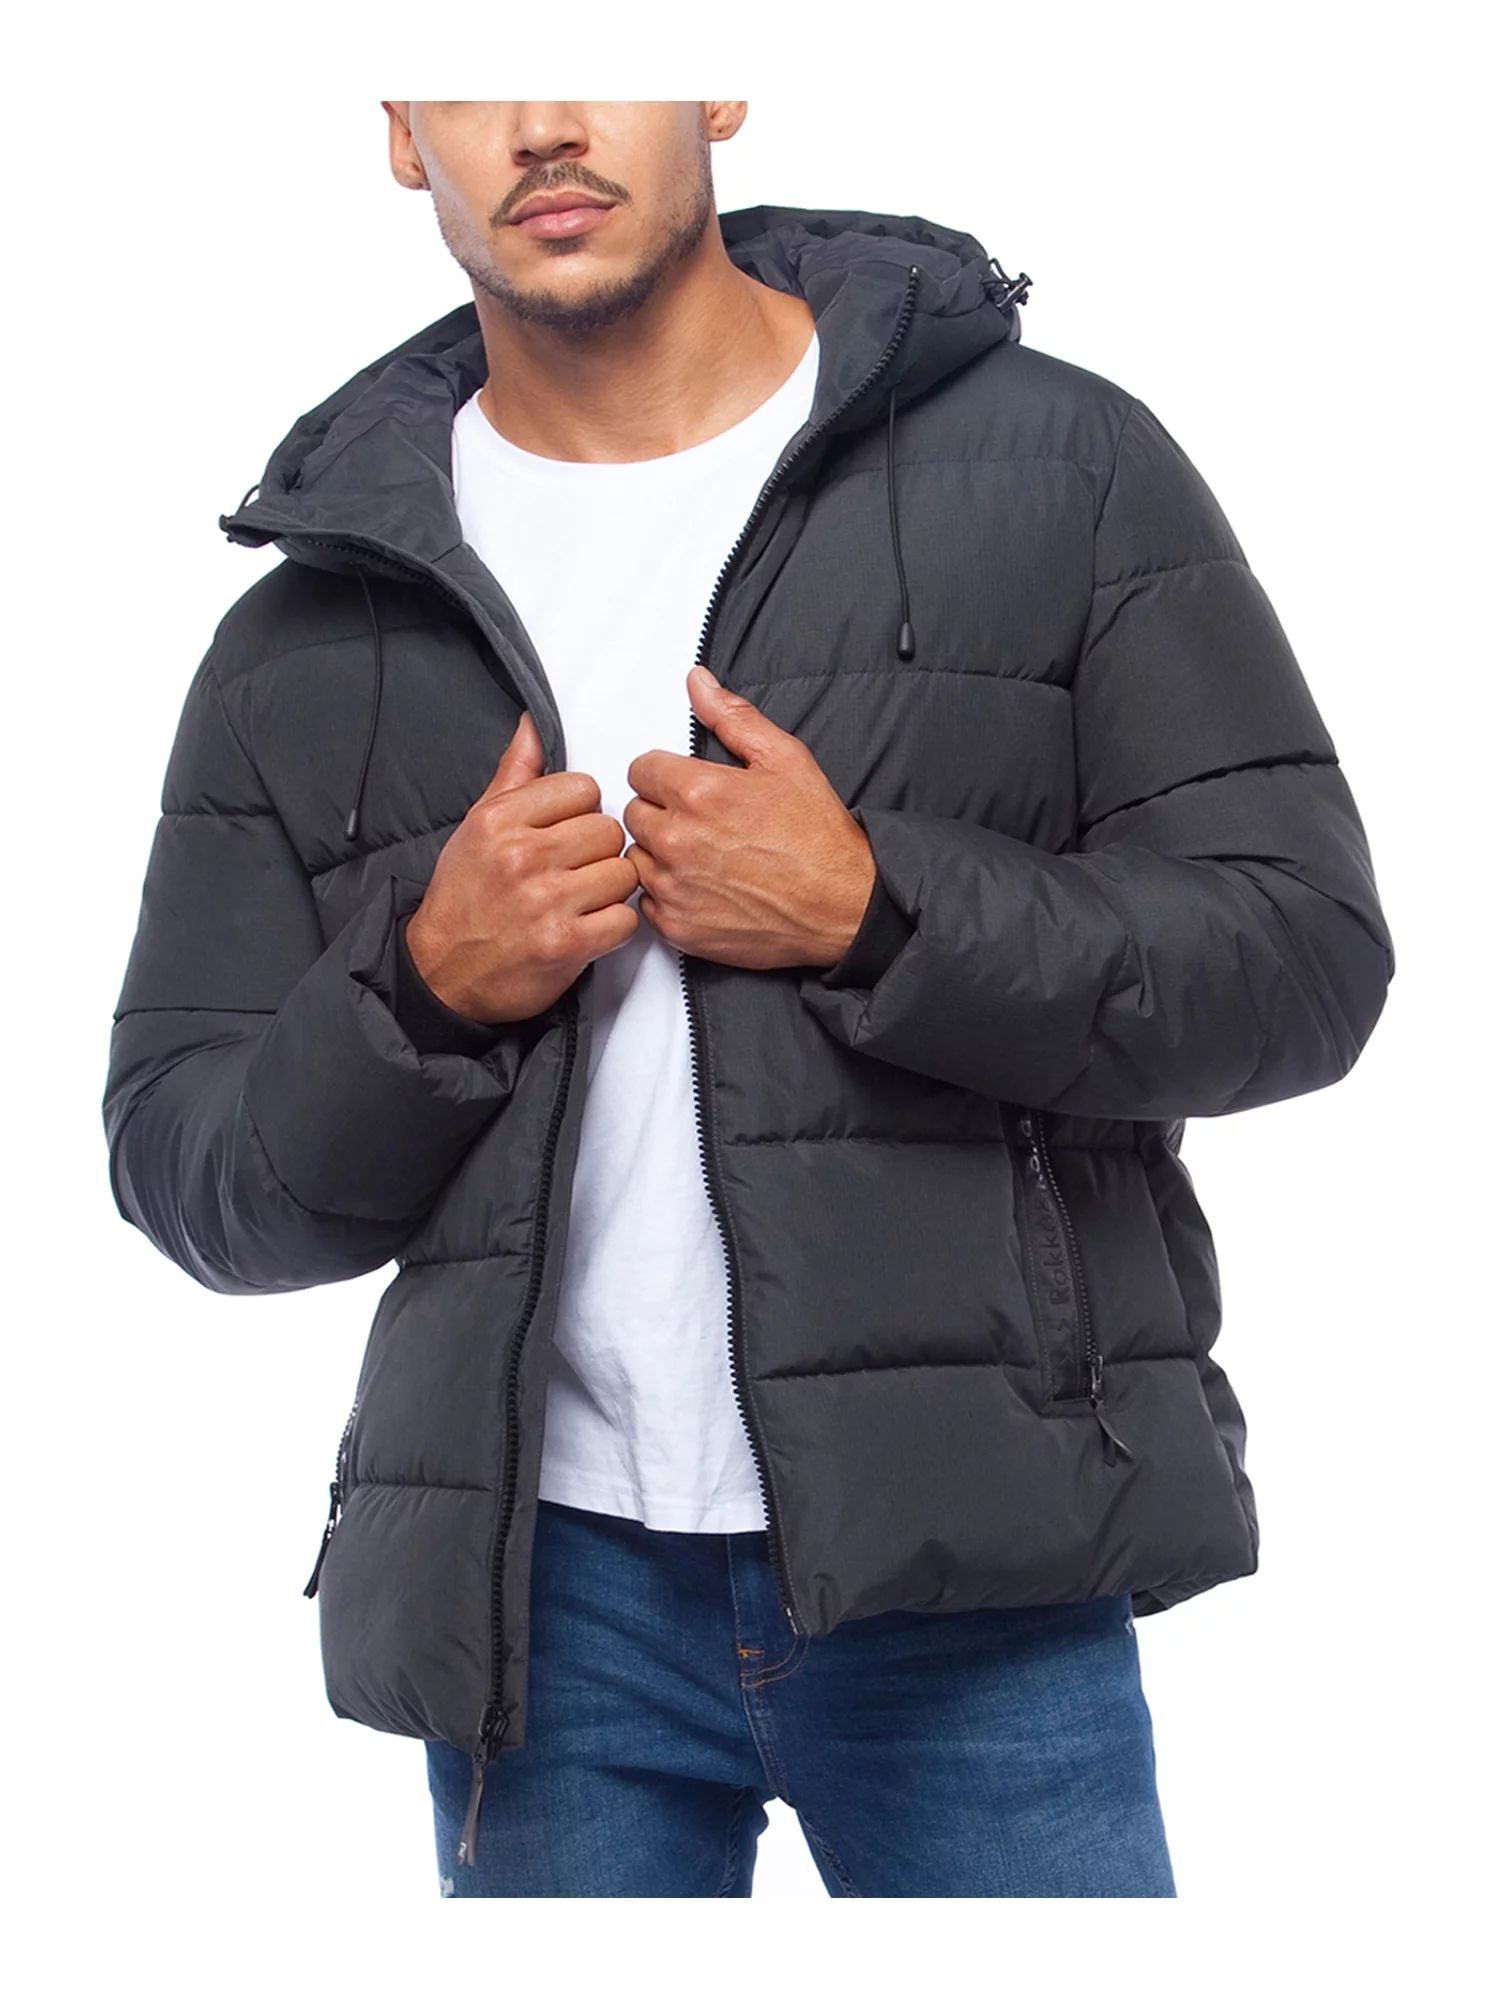 Rokka&Rolla Men's Heavy Winter Coat Thermal Heat Puffer Jacket | Walmart (US)